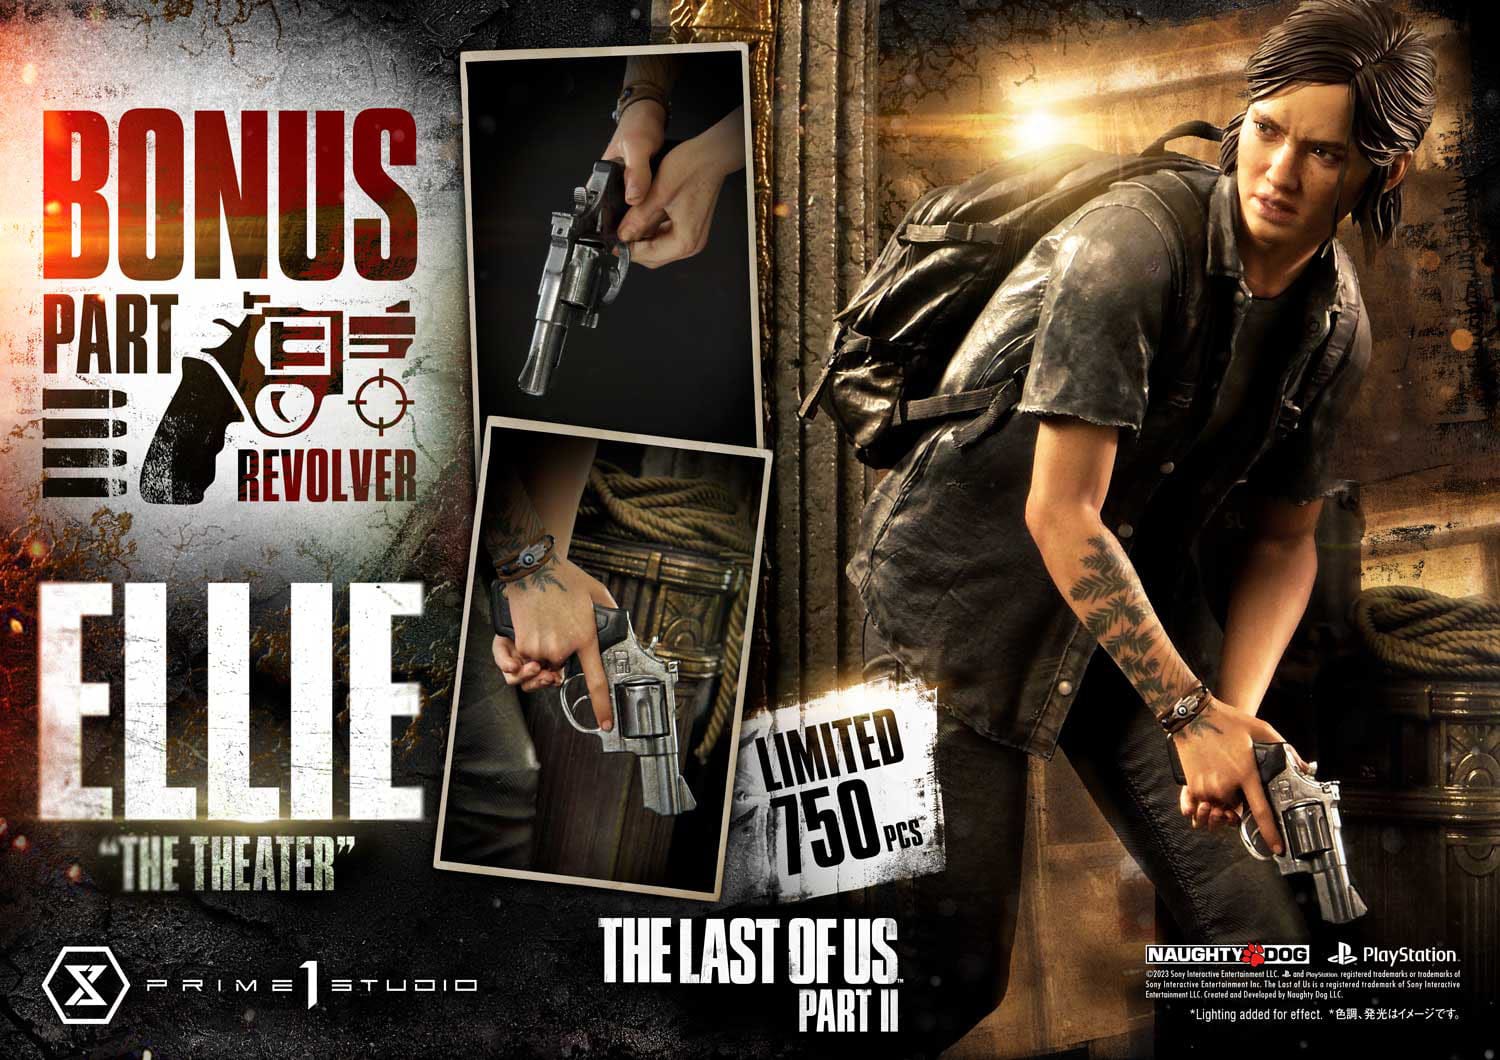 Ultimate Premium Masterline Series Abby Bonus Version Figure, The Last of  Us Part II Figure